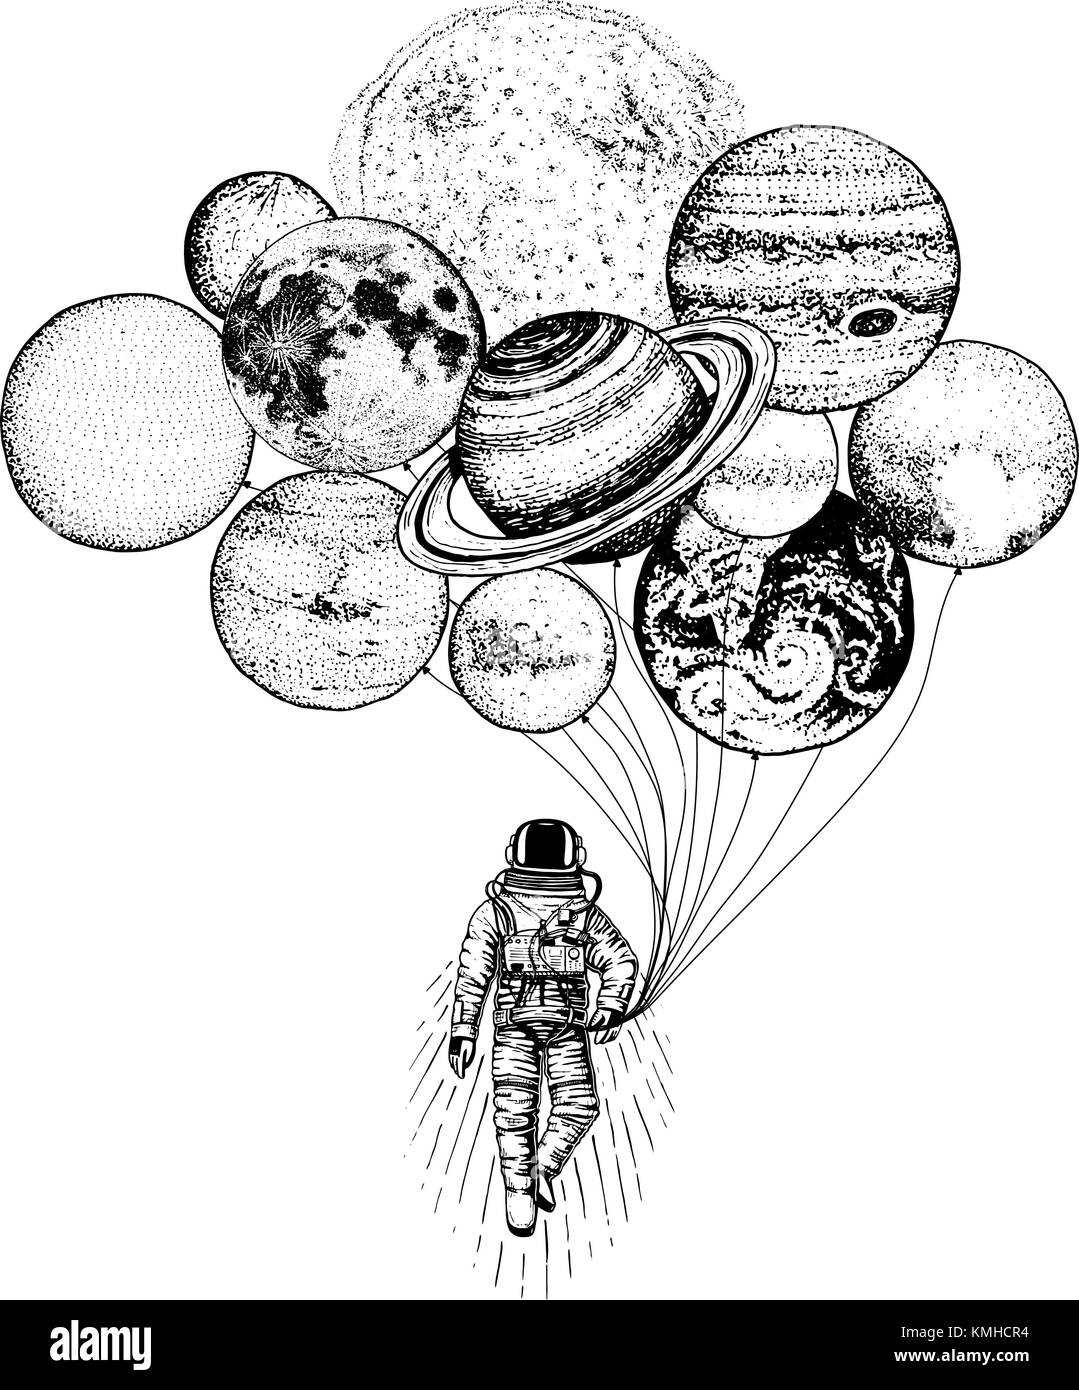 Spaceman astronaute. planètes de système solaire. d'astronomie galaxie espace. cosmonaut explorer aventure. gravés à la main dans de vieux croquis. lune et le soleil et la Terre, Mars et Vénus, des ballons. Illustration de Vecteur